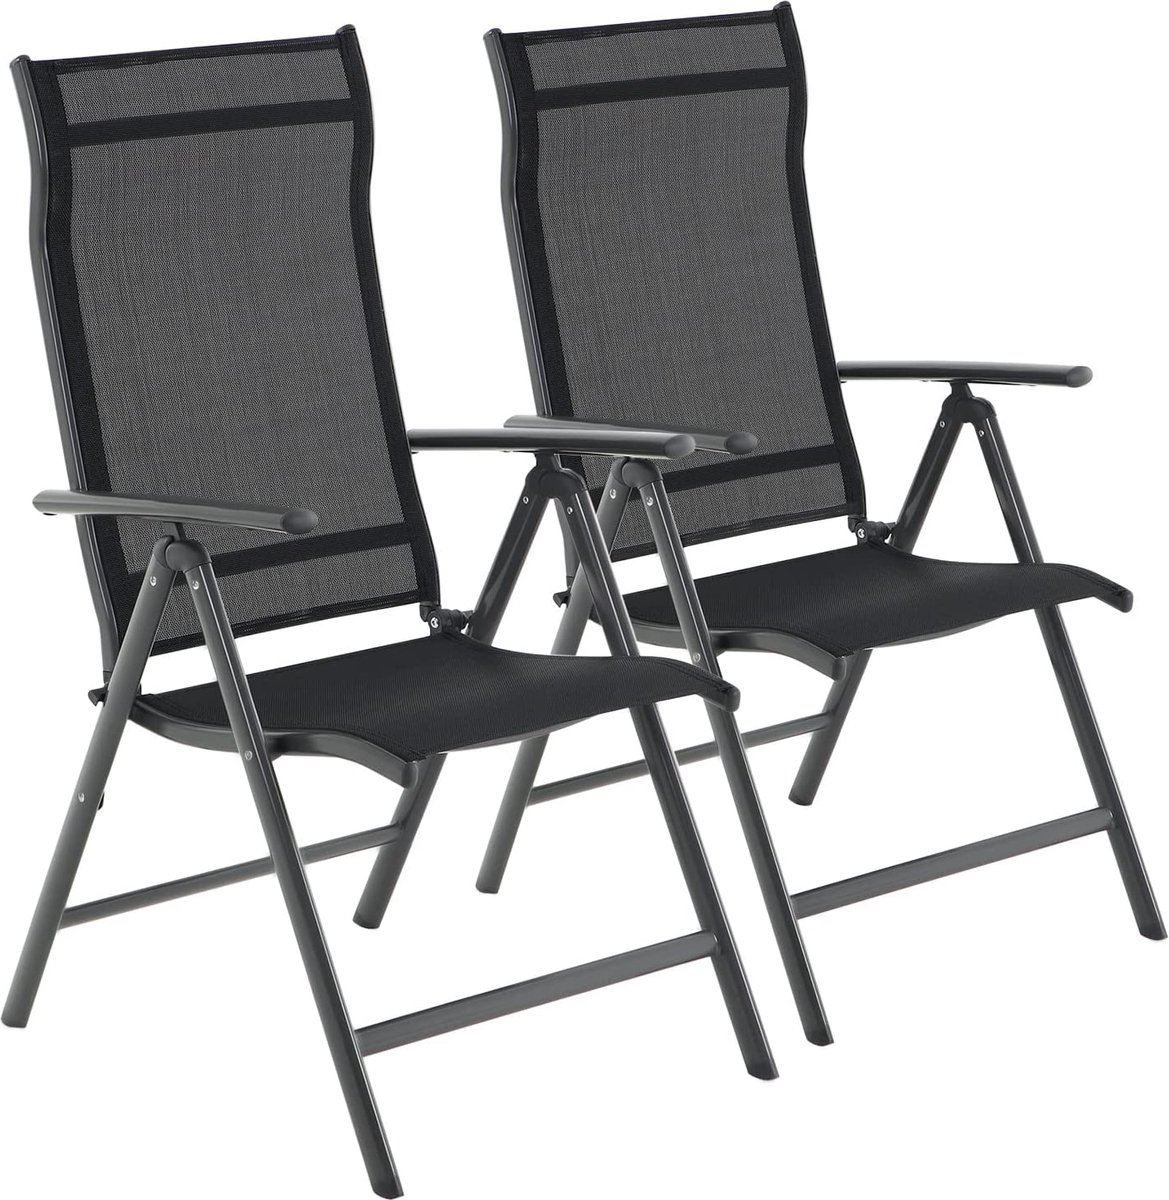 The Mash - Tuinstoelen, set van 2, klapstoelen, buitenstoelen met robuust aluminium frame, rugleuning in 8 standen verstelbaar, belastbaar tot 150 kg, zwart